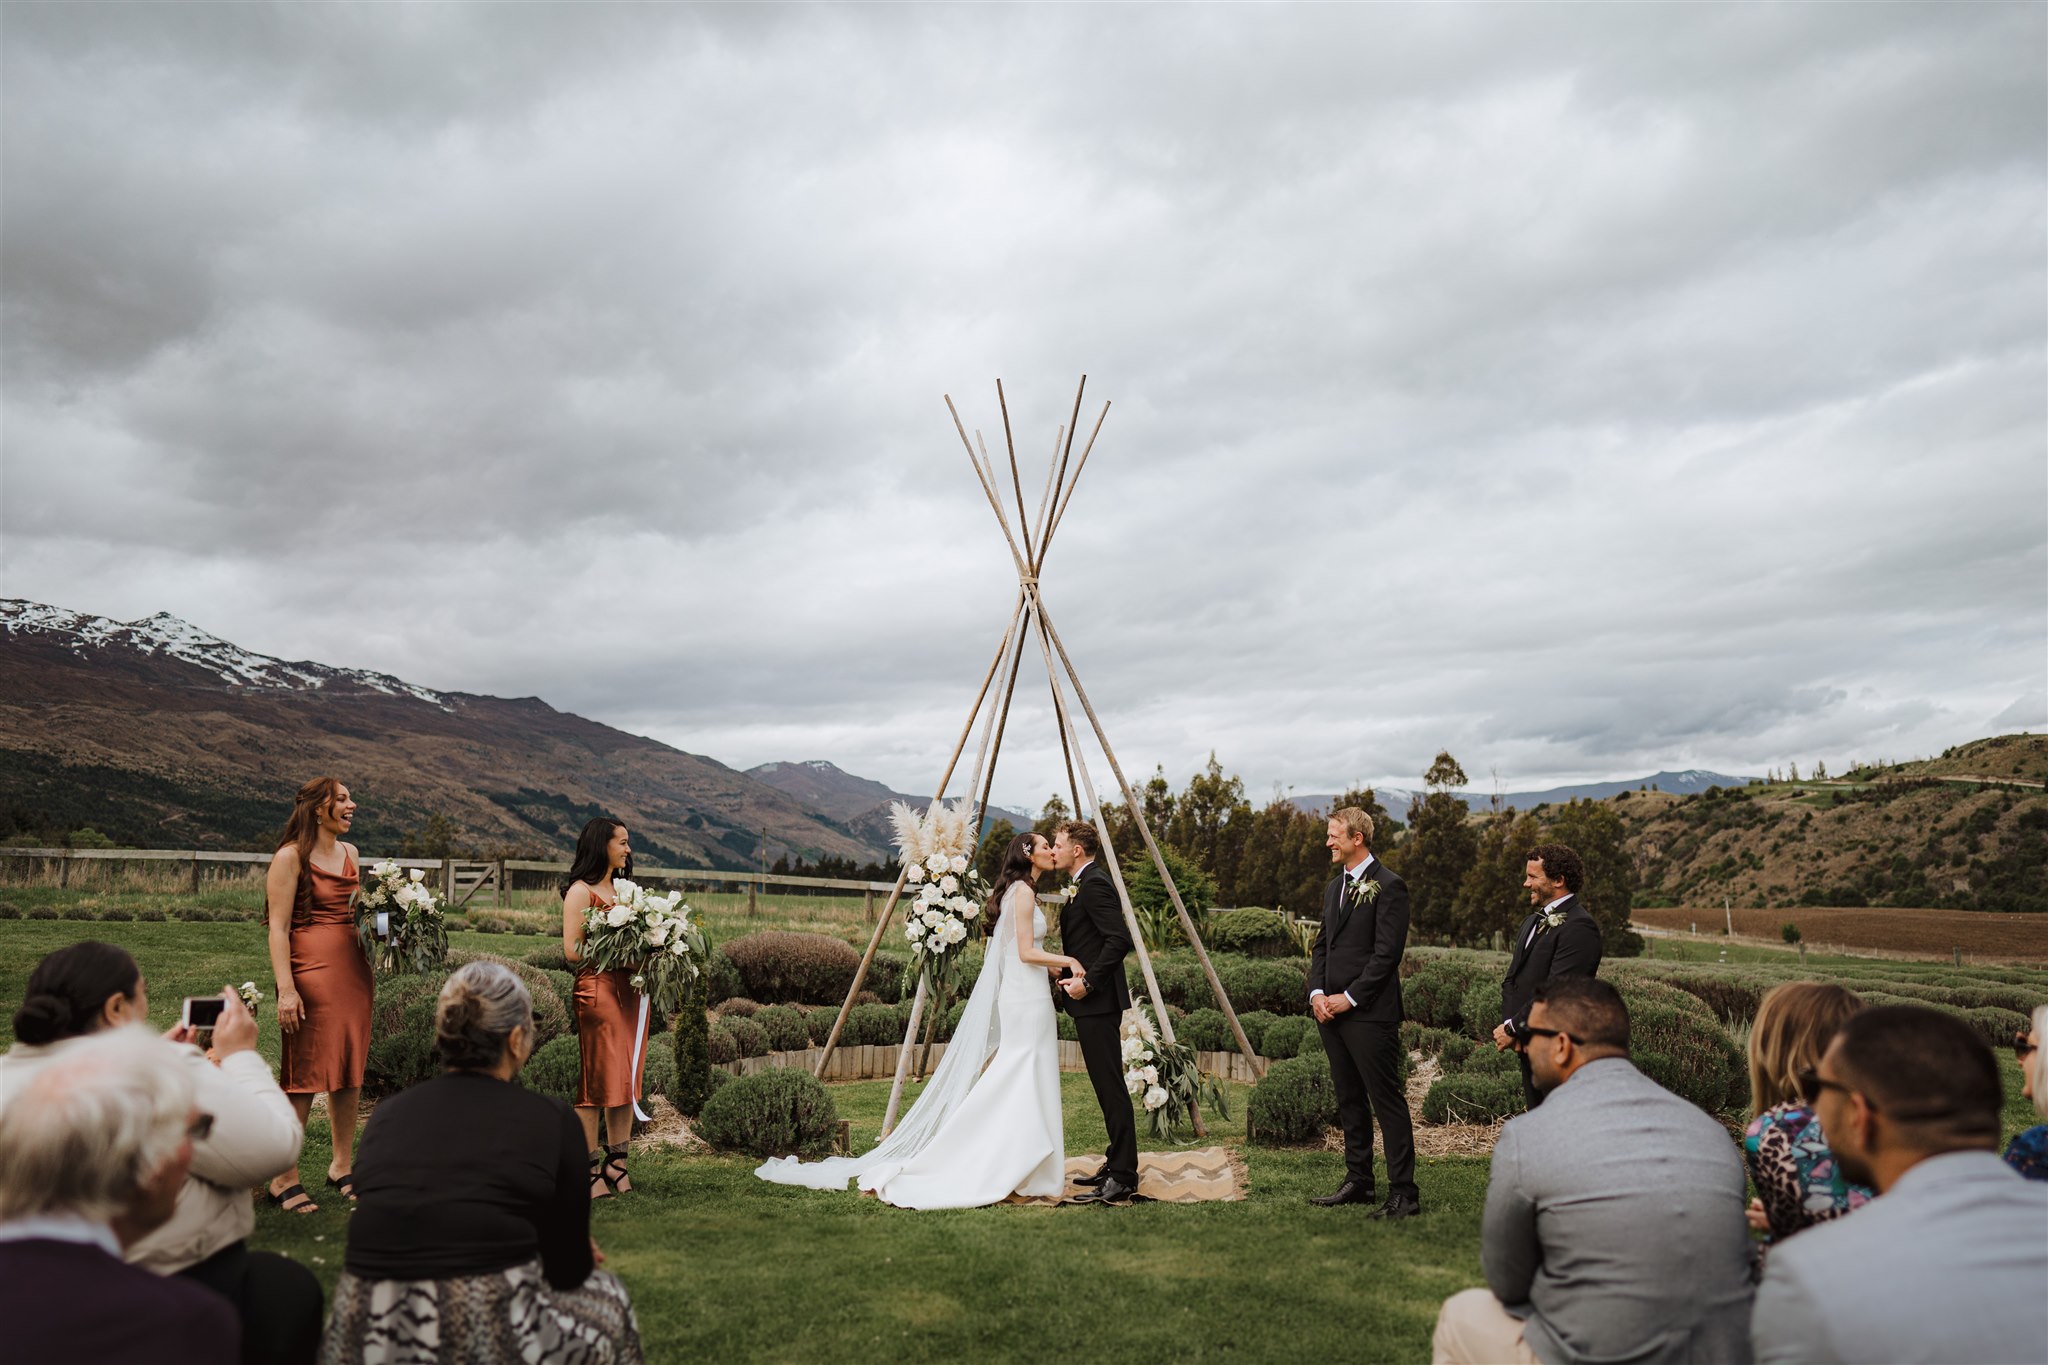 Wedding ceremony under tipi arch at Ben Lomond Lavender Farm in Queenstown, New Zealand